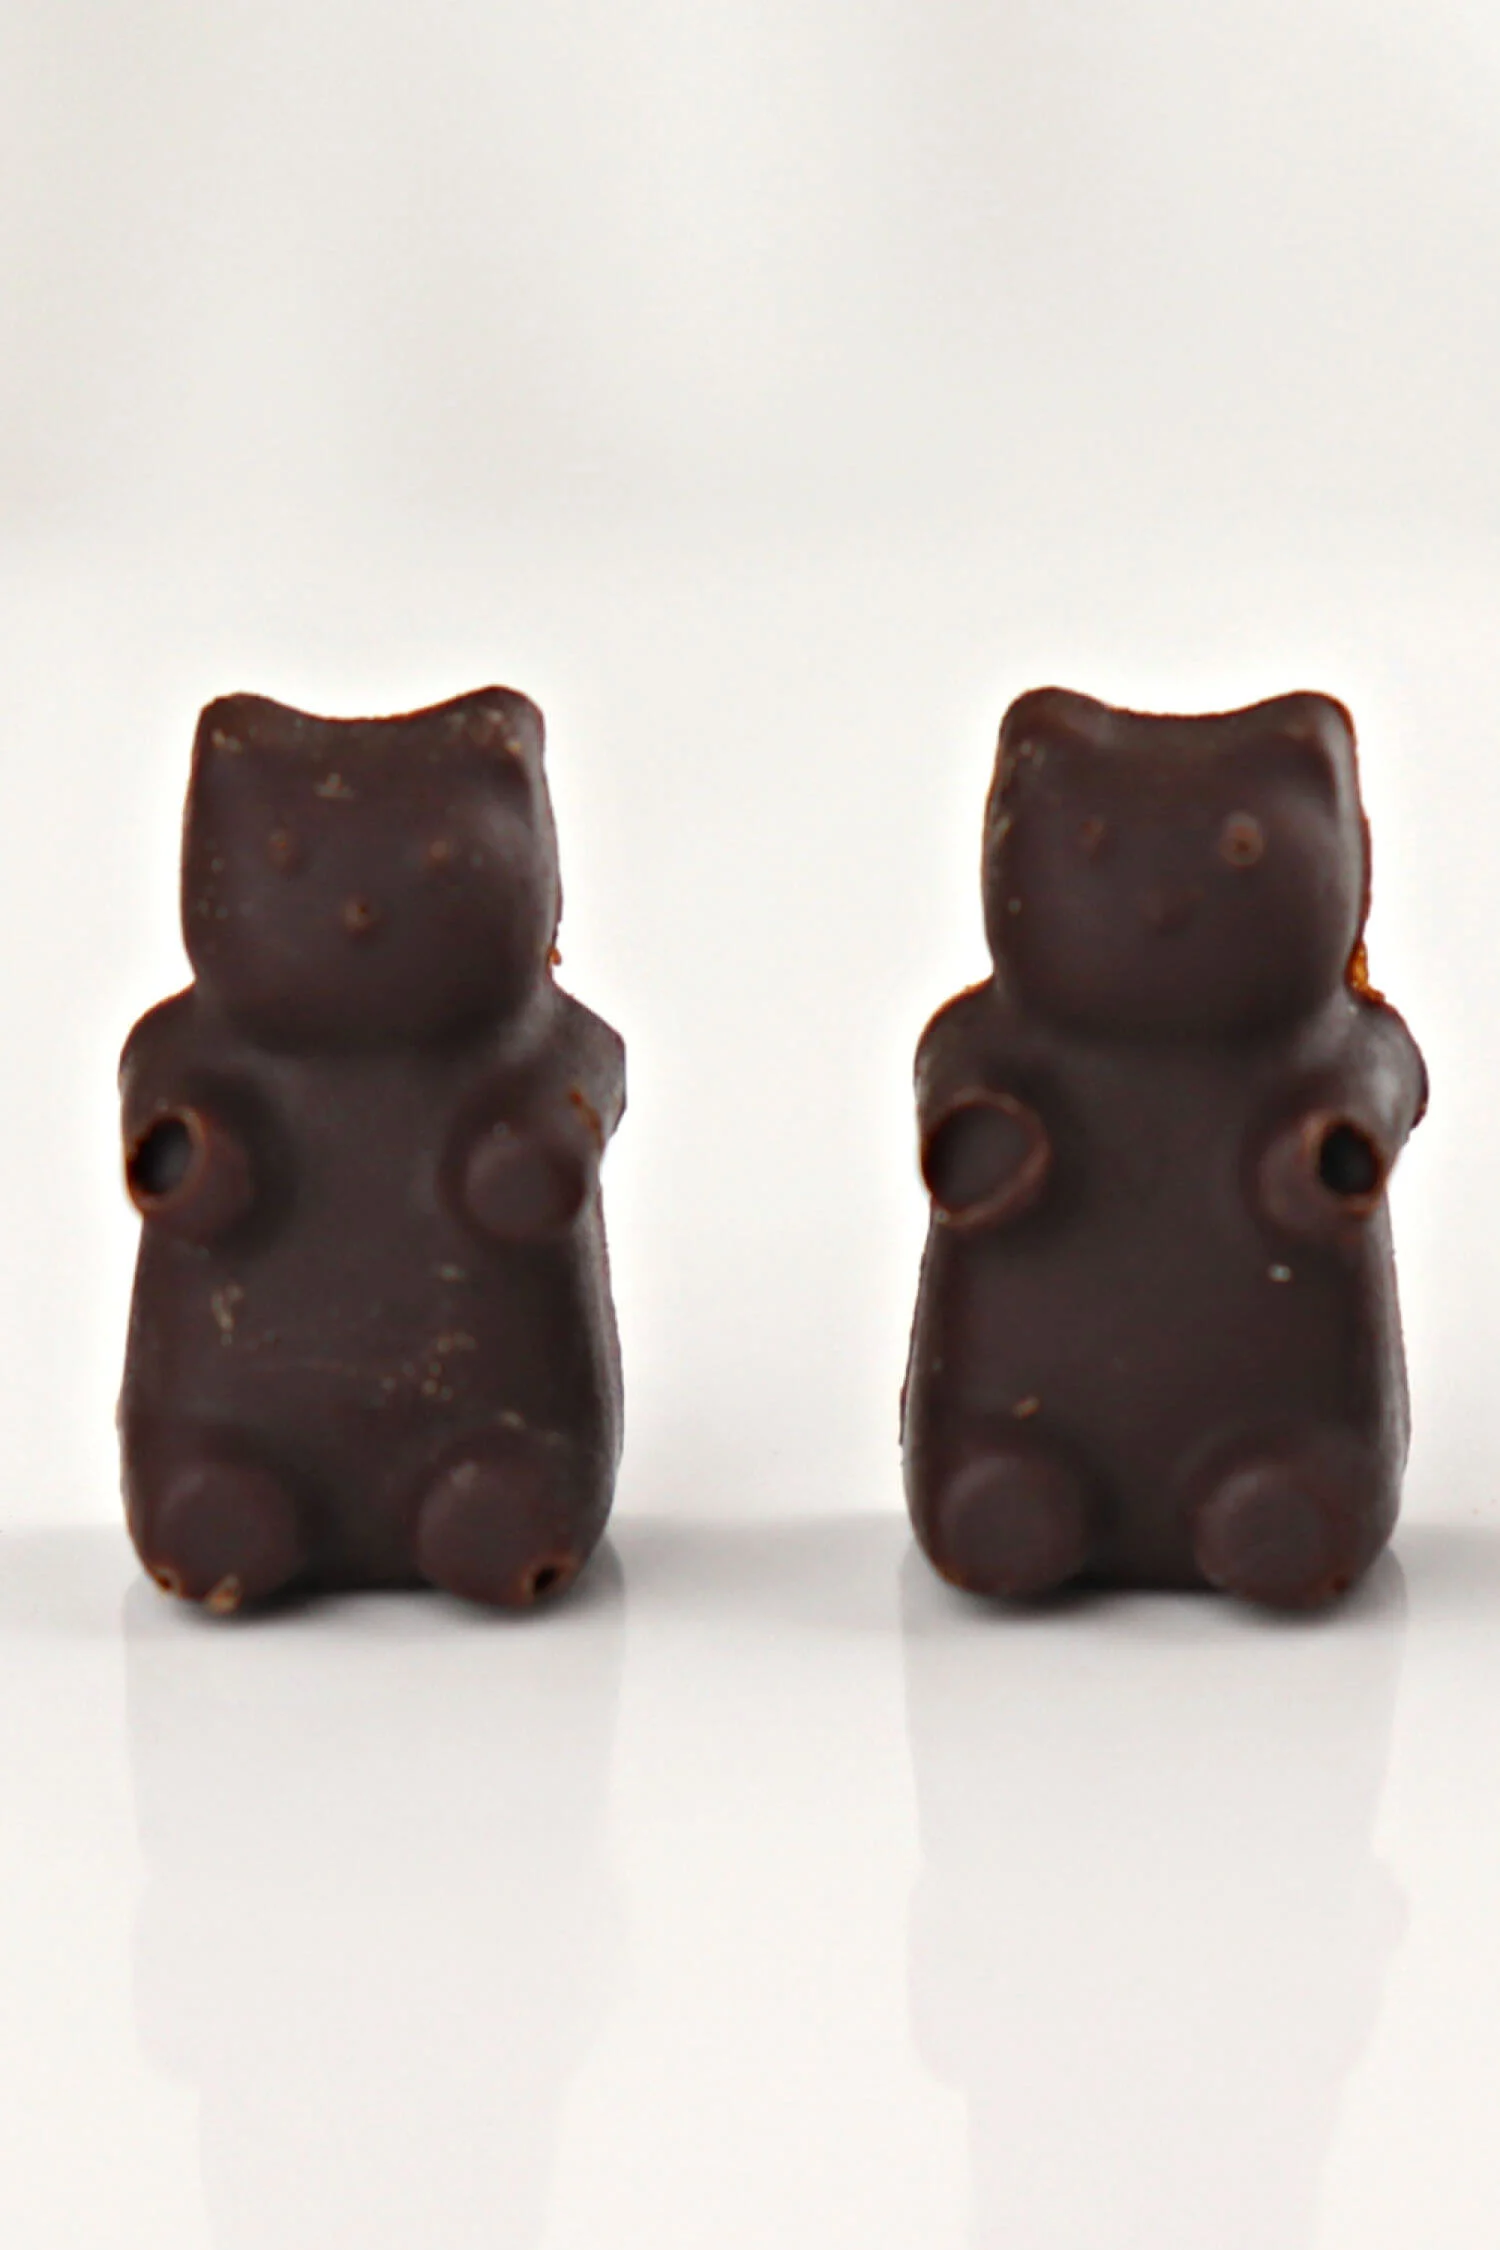 Two keto chocolate bears #ketochocolate #chocolatecraving #lowcarbchocolate